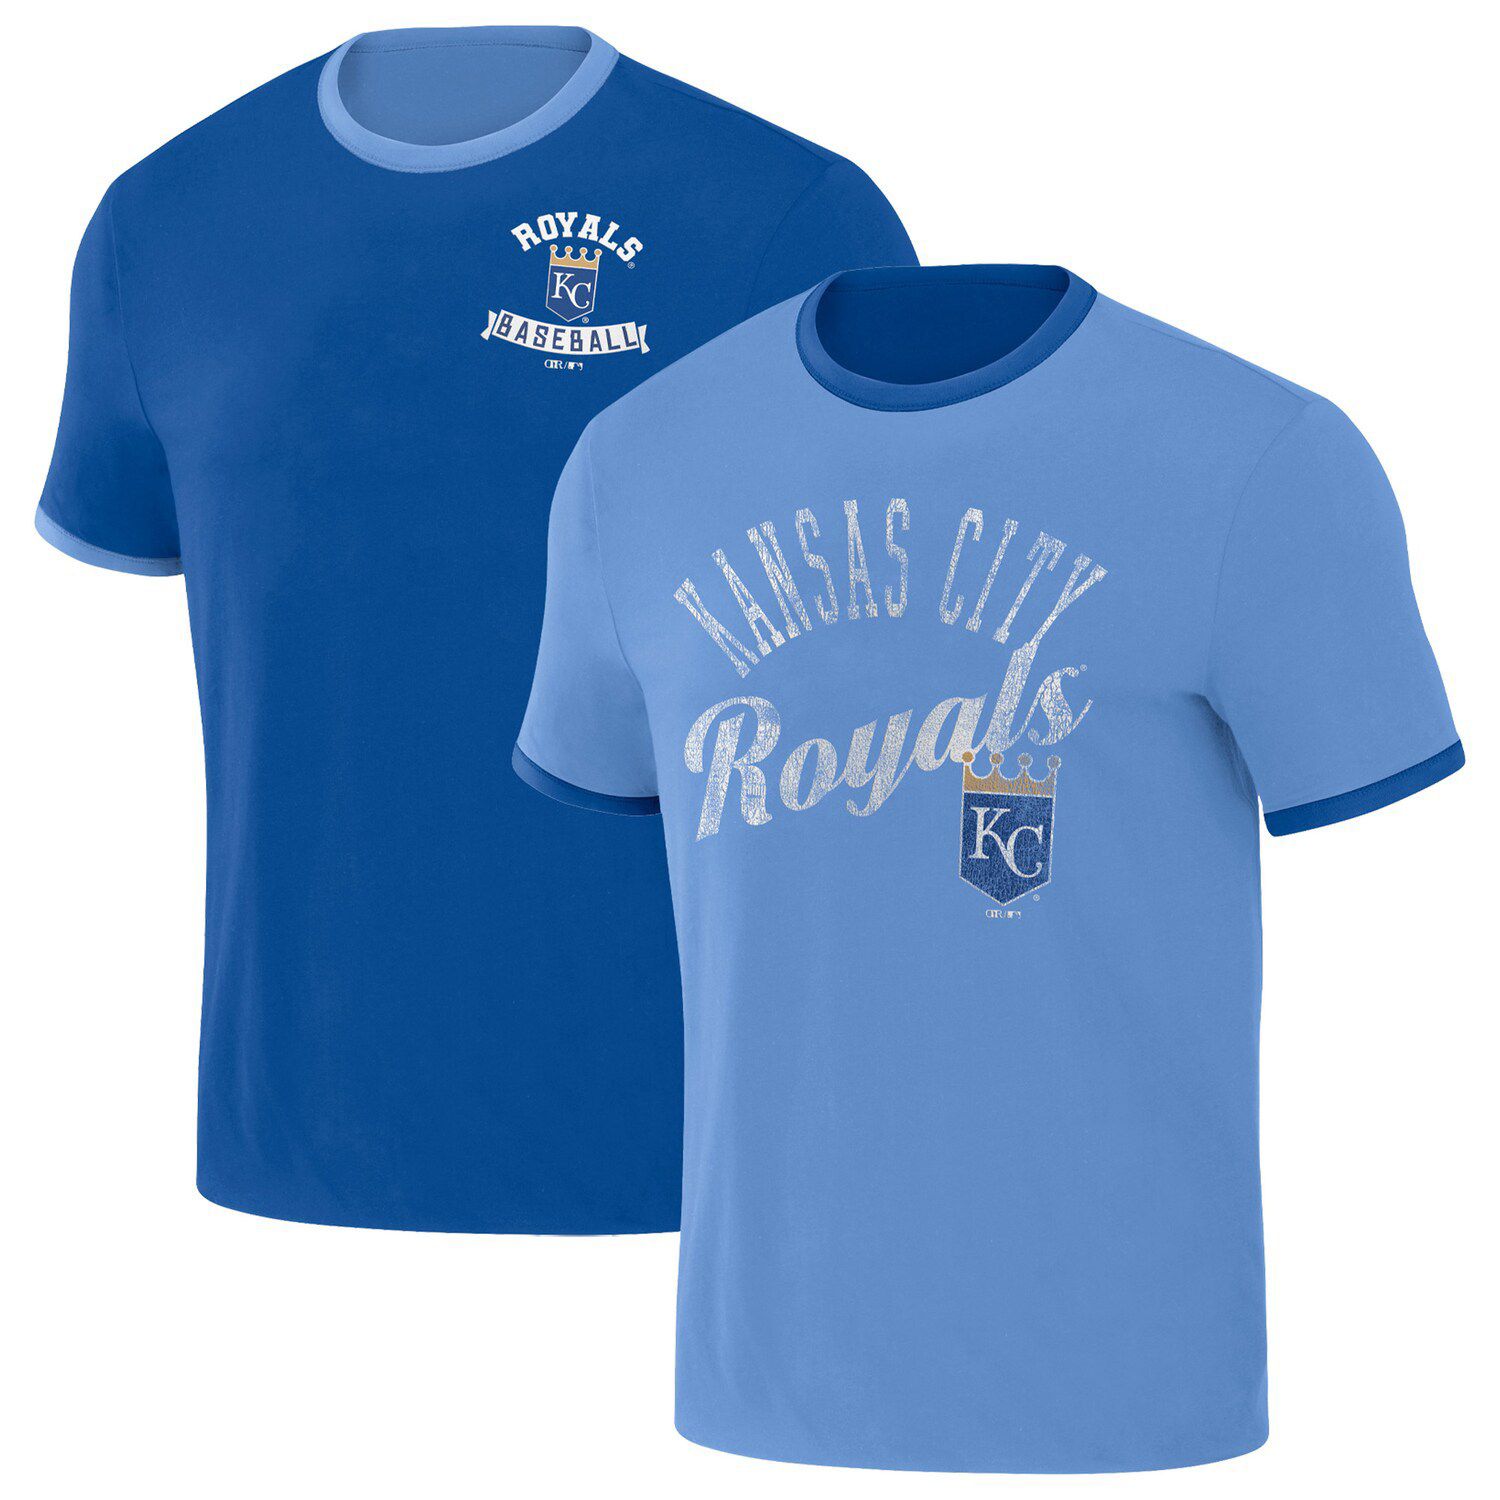 Fanatics Branded Royal/Light Blue Kansas City Royals True Classic League Diva Pinstripe Raglan V-Nec